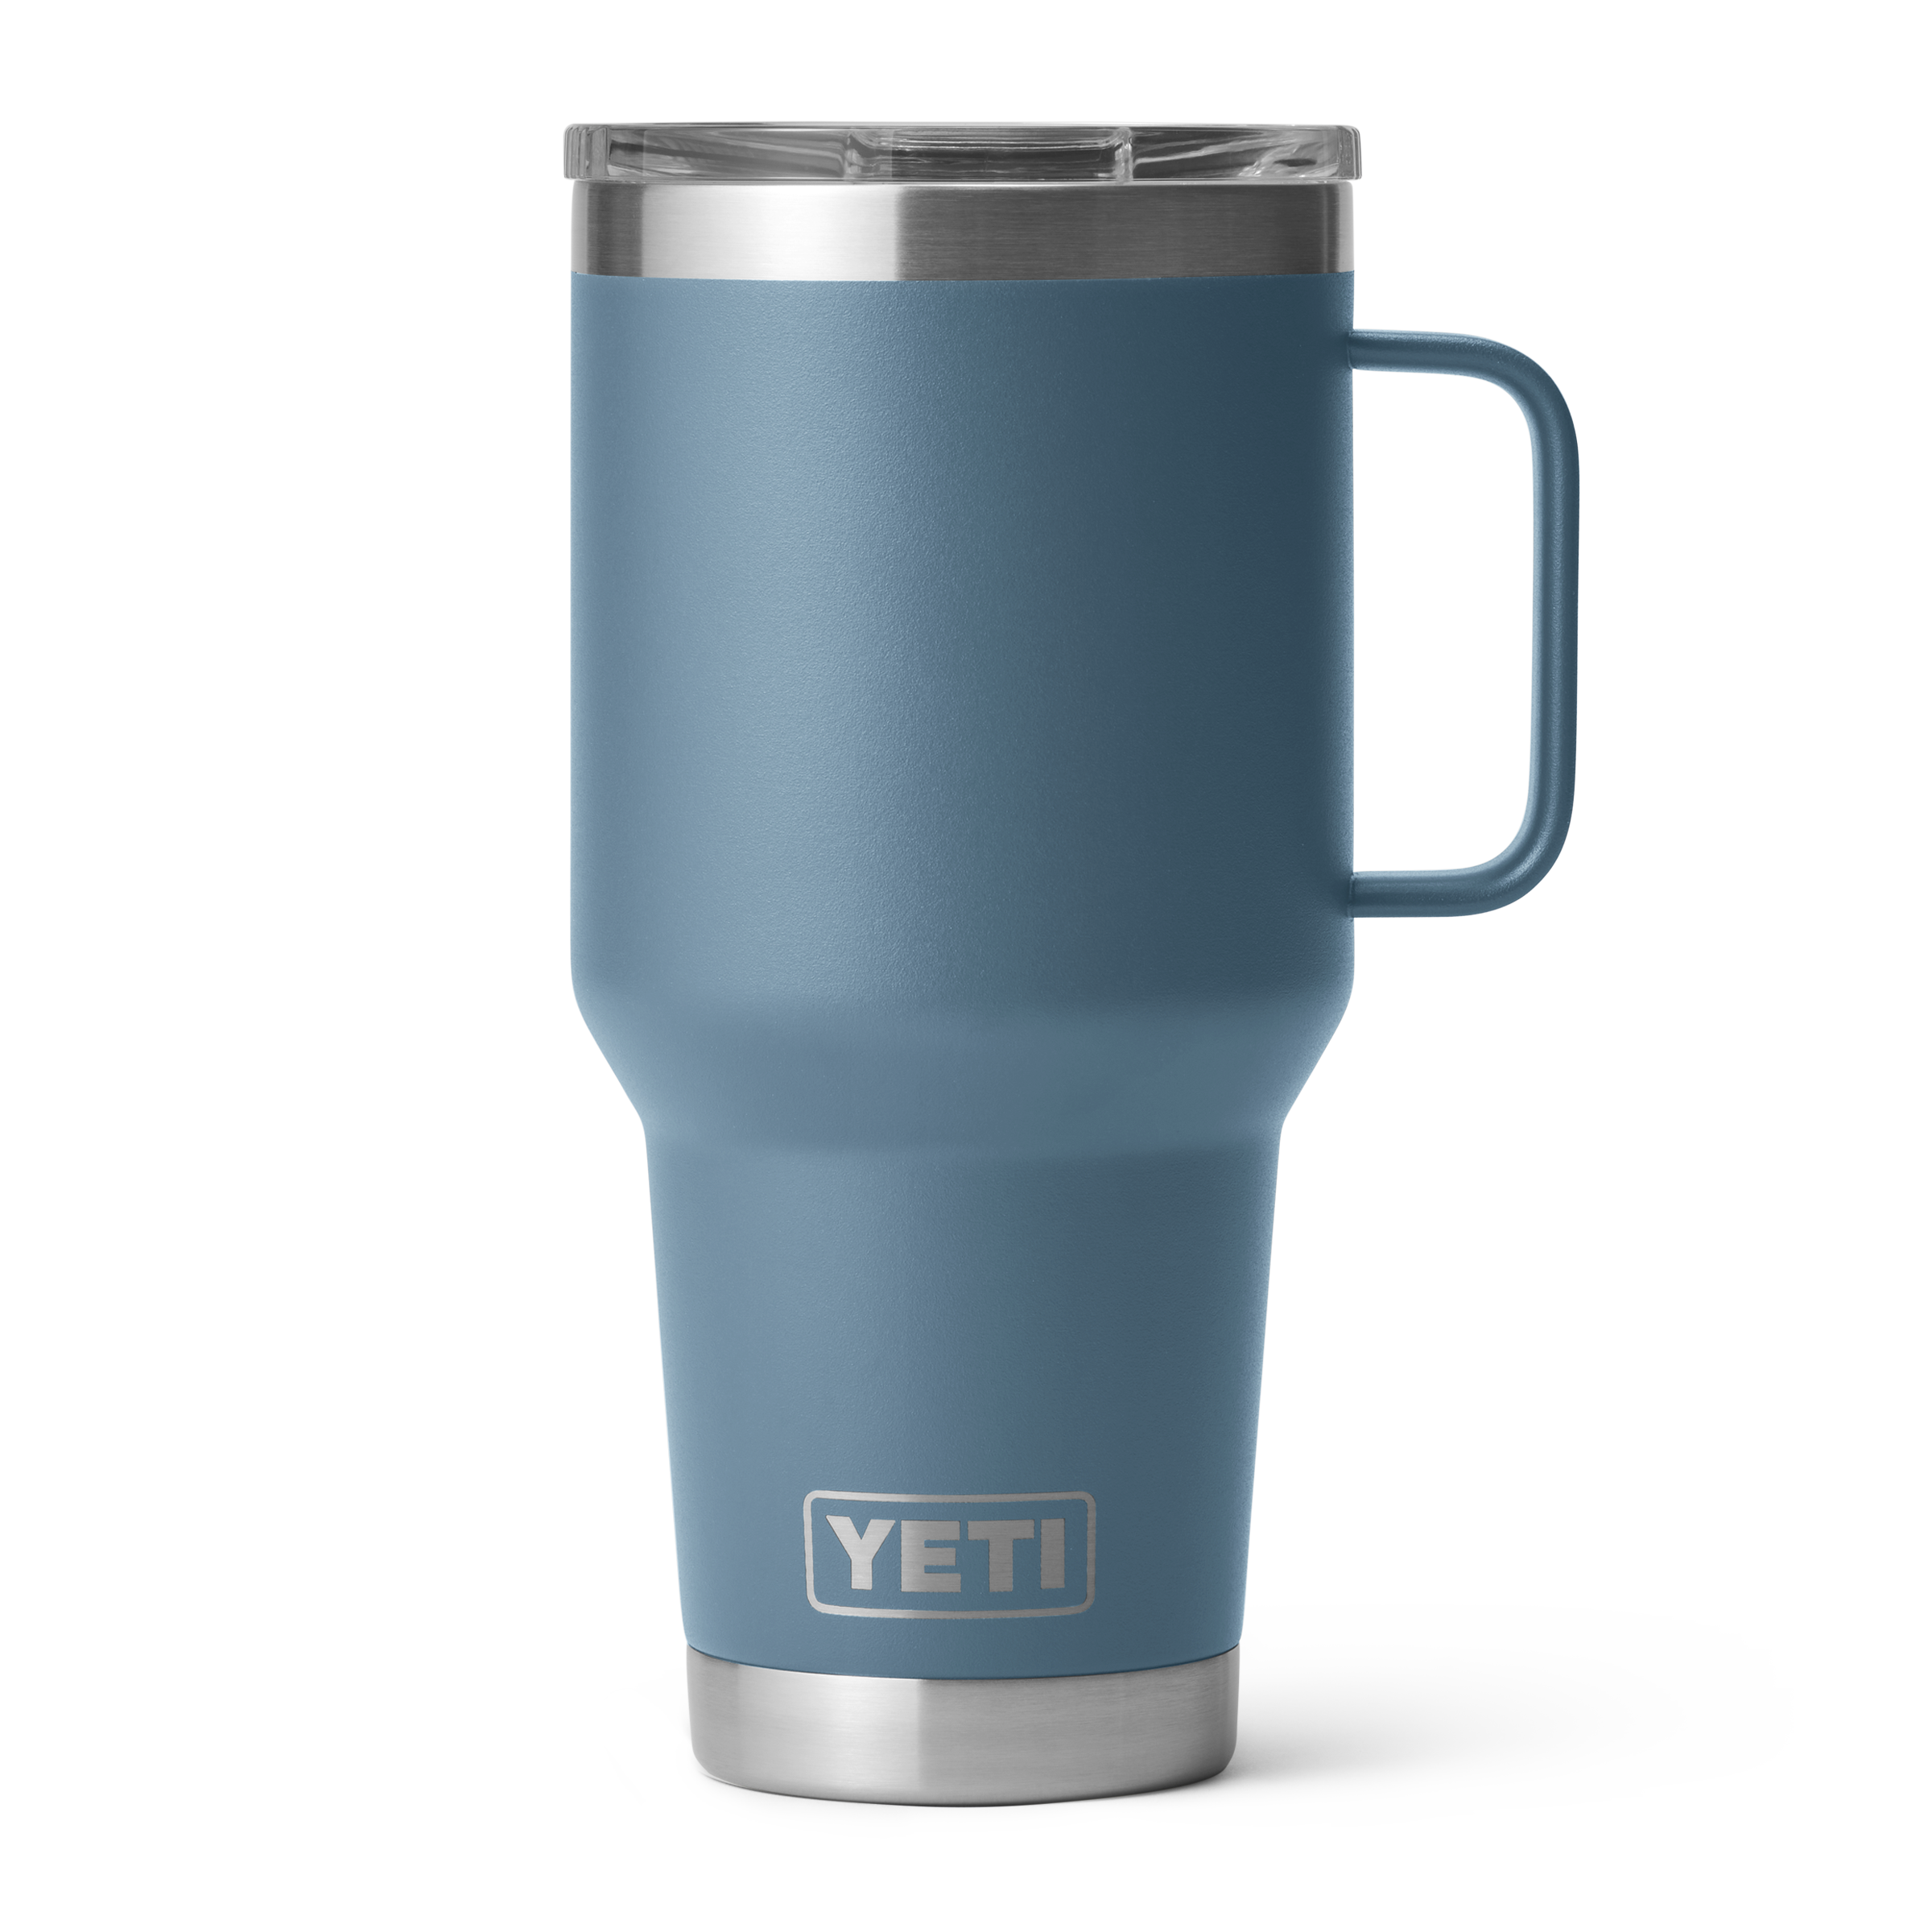 YETI Rambler 30 oz. Travel Mug - Nordic Blue $ 42